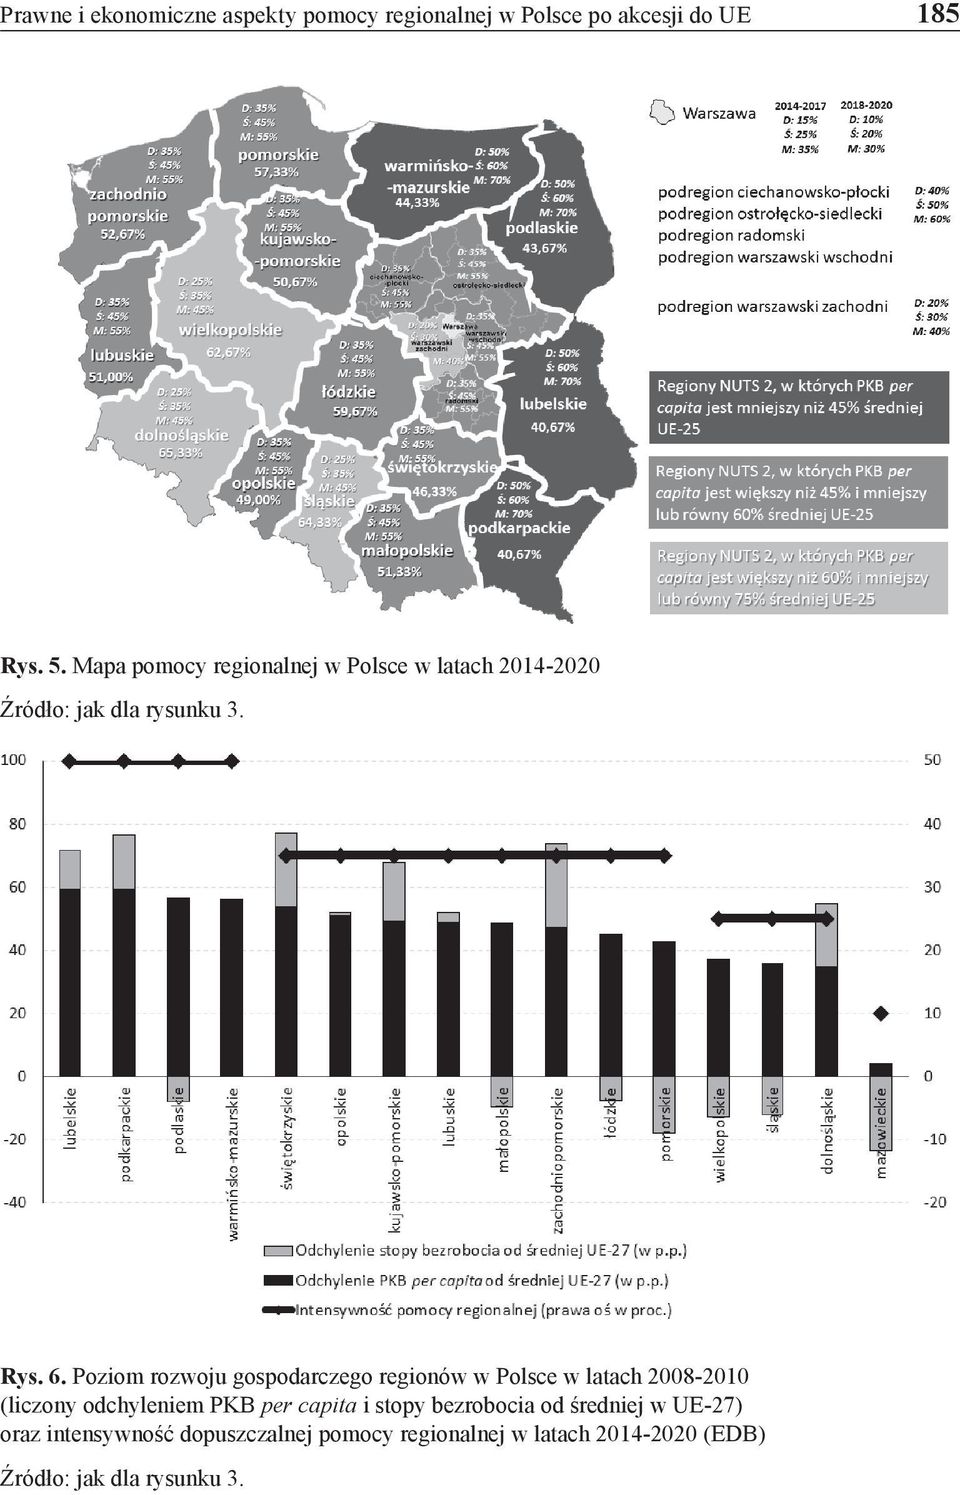 Poziom rozwoju gospodarczego regionów w Polsce w latach 2008-2010 (liczony odchyleniem PKB per capita i